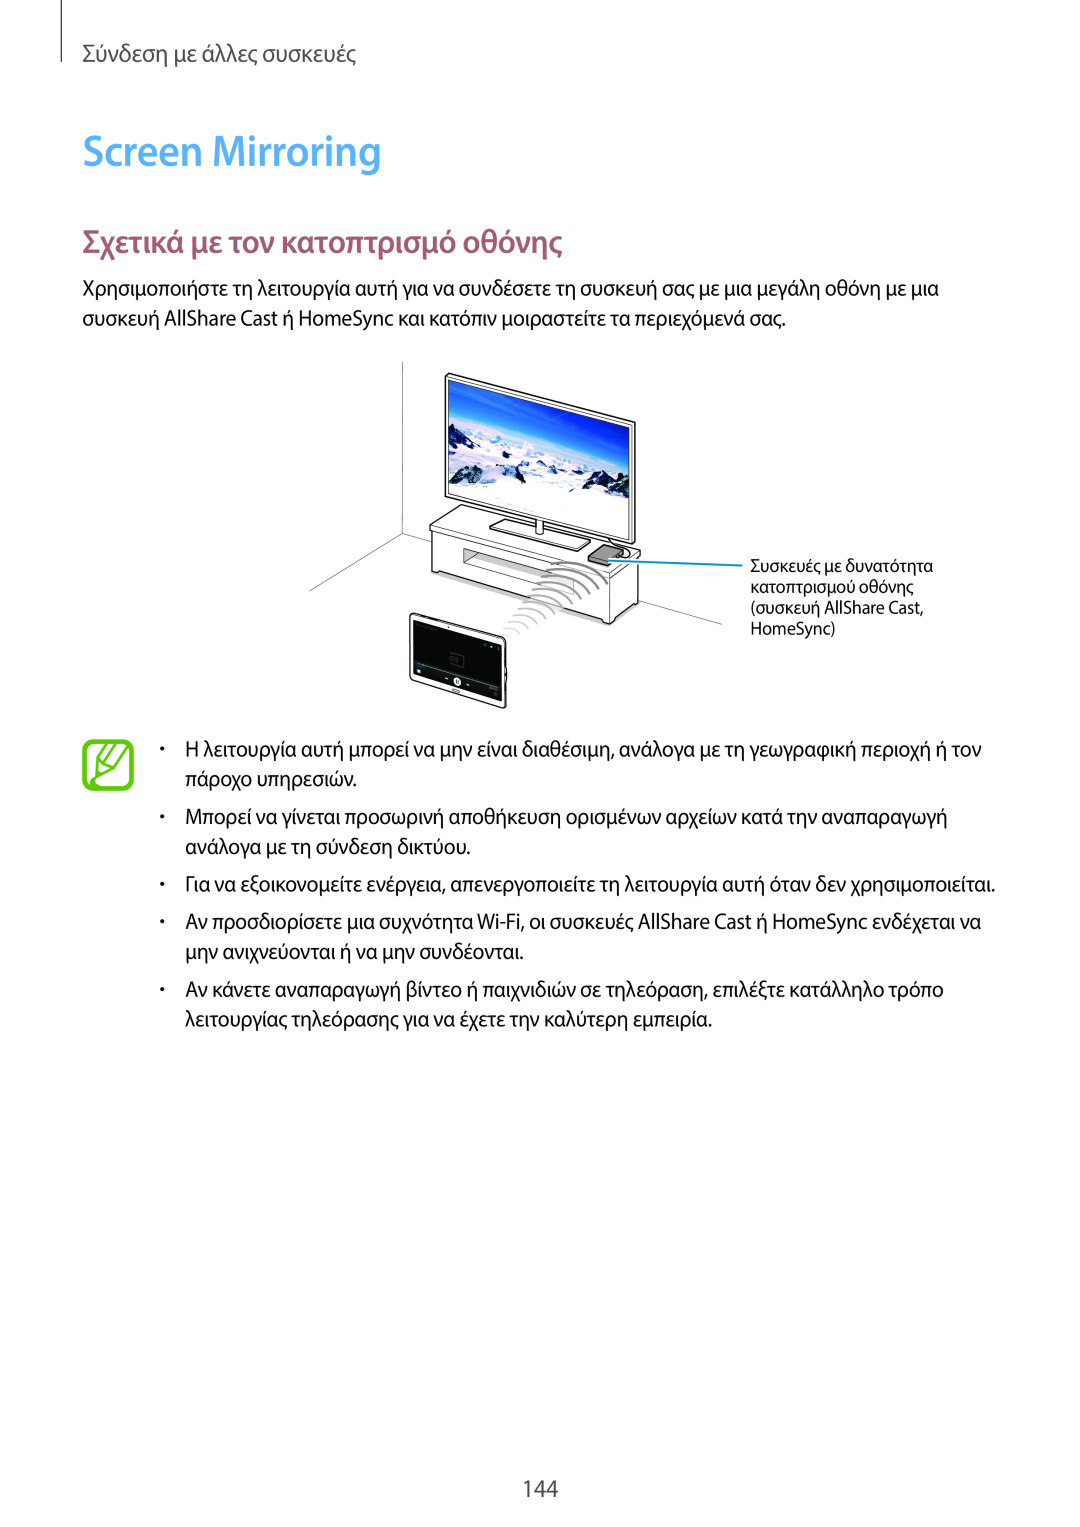 Samsung SM-T805NTSAEUR, SM-T805NZWAEUR manual Screen Mirroring, Σχετικά με τον κατοπτρισμό οθόνης, Σύνδεση με άλλες συσκευές 